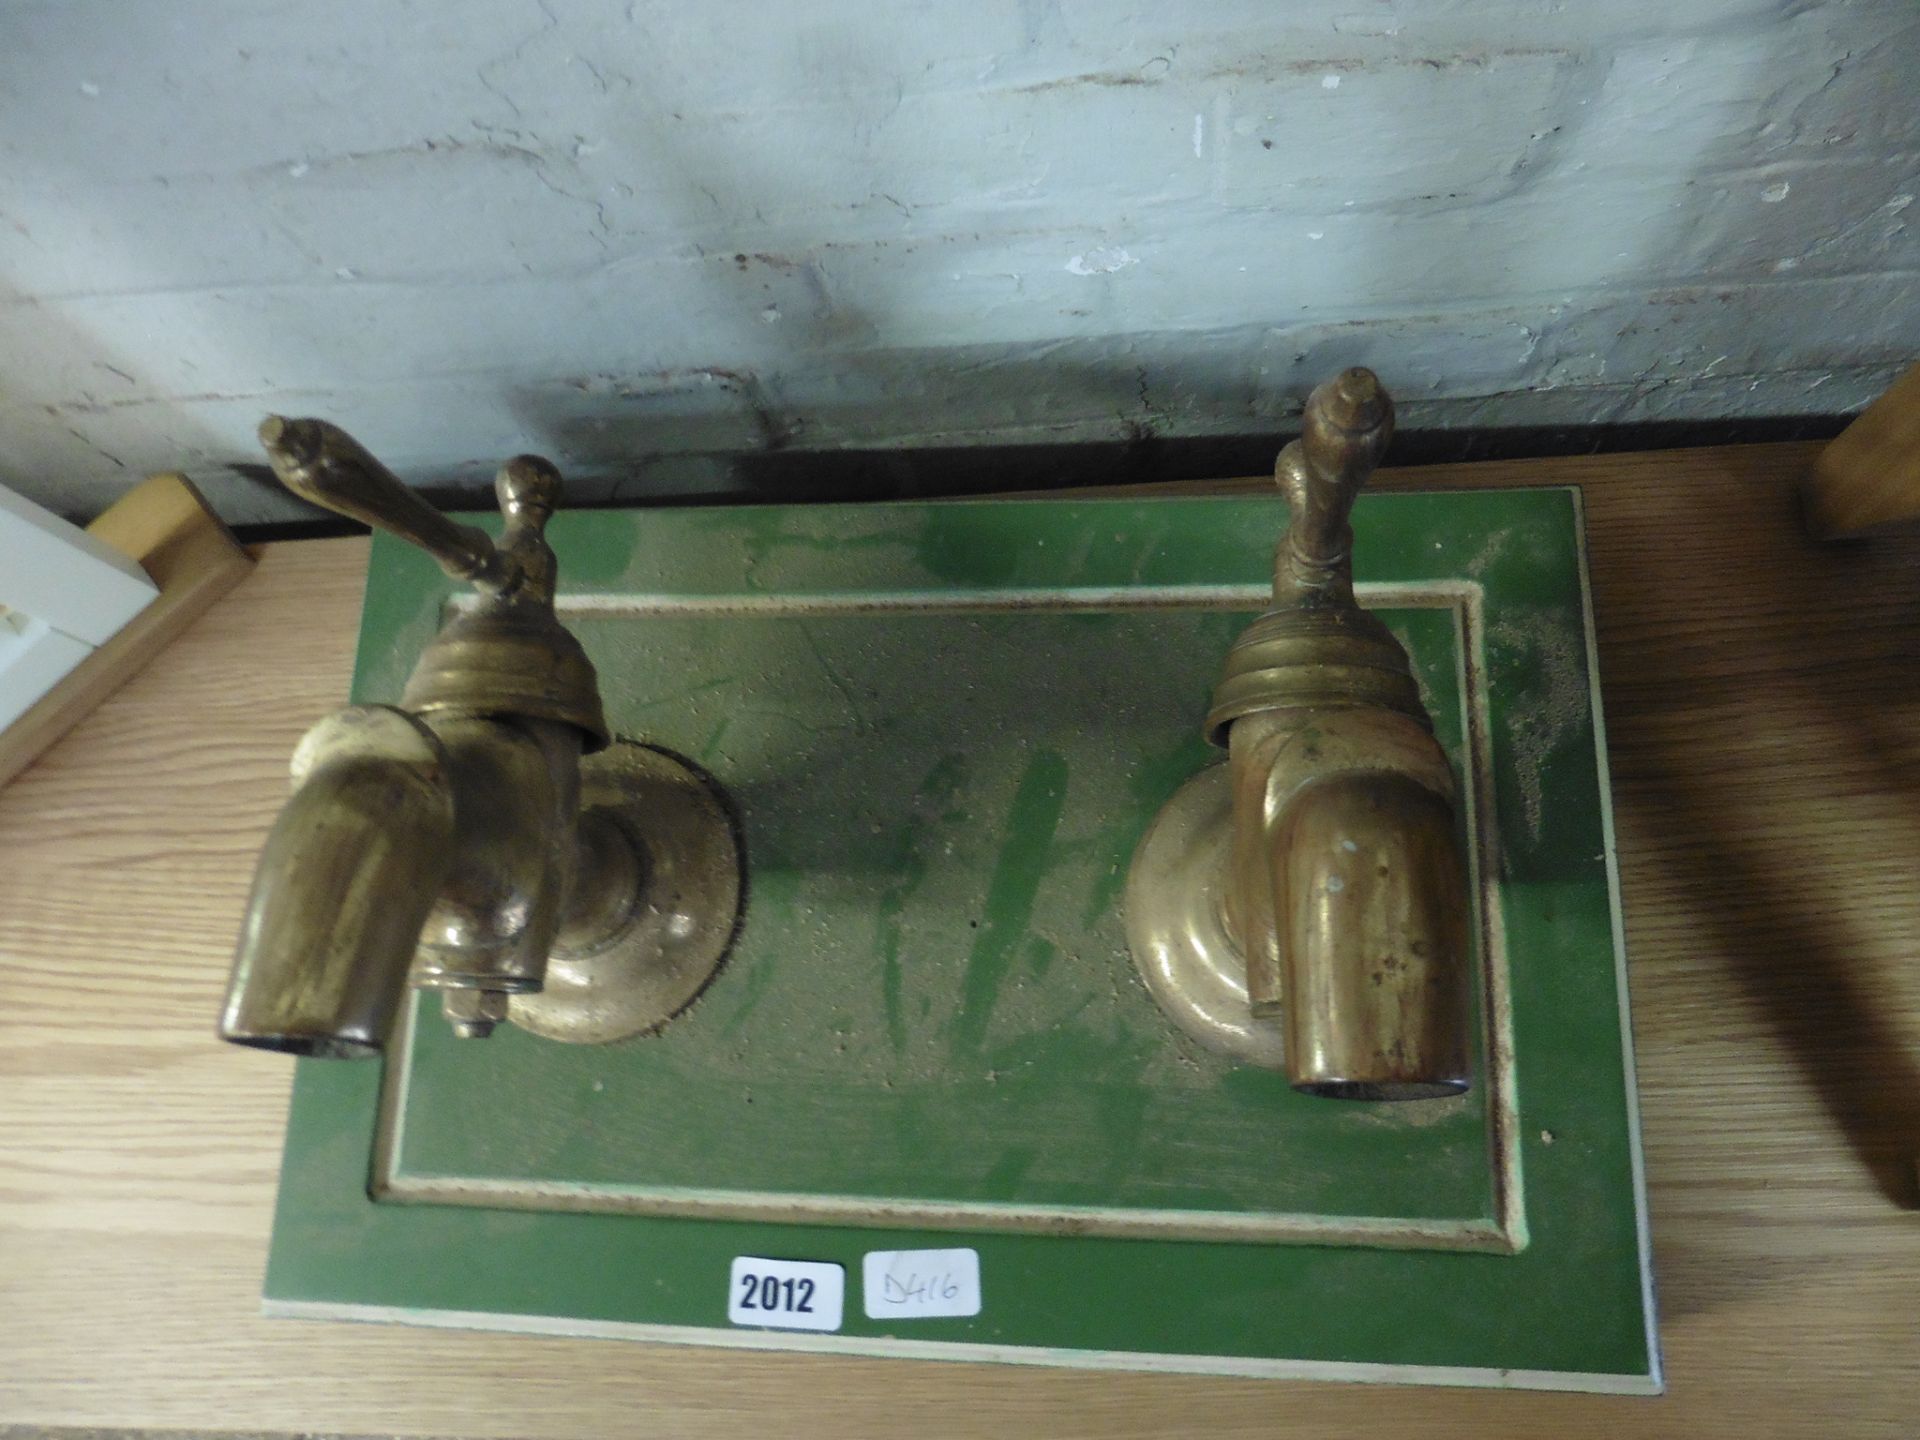 Mounted pair of vintage brass taps